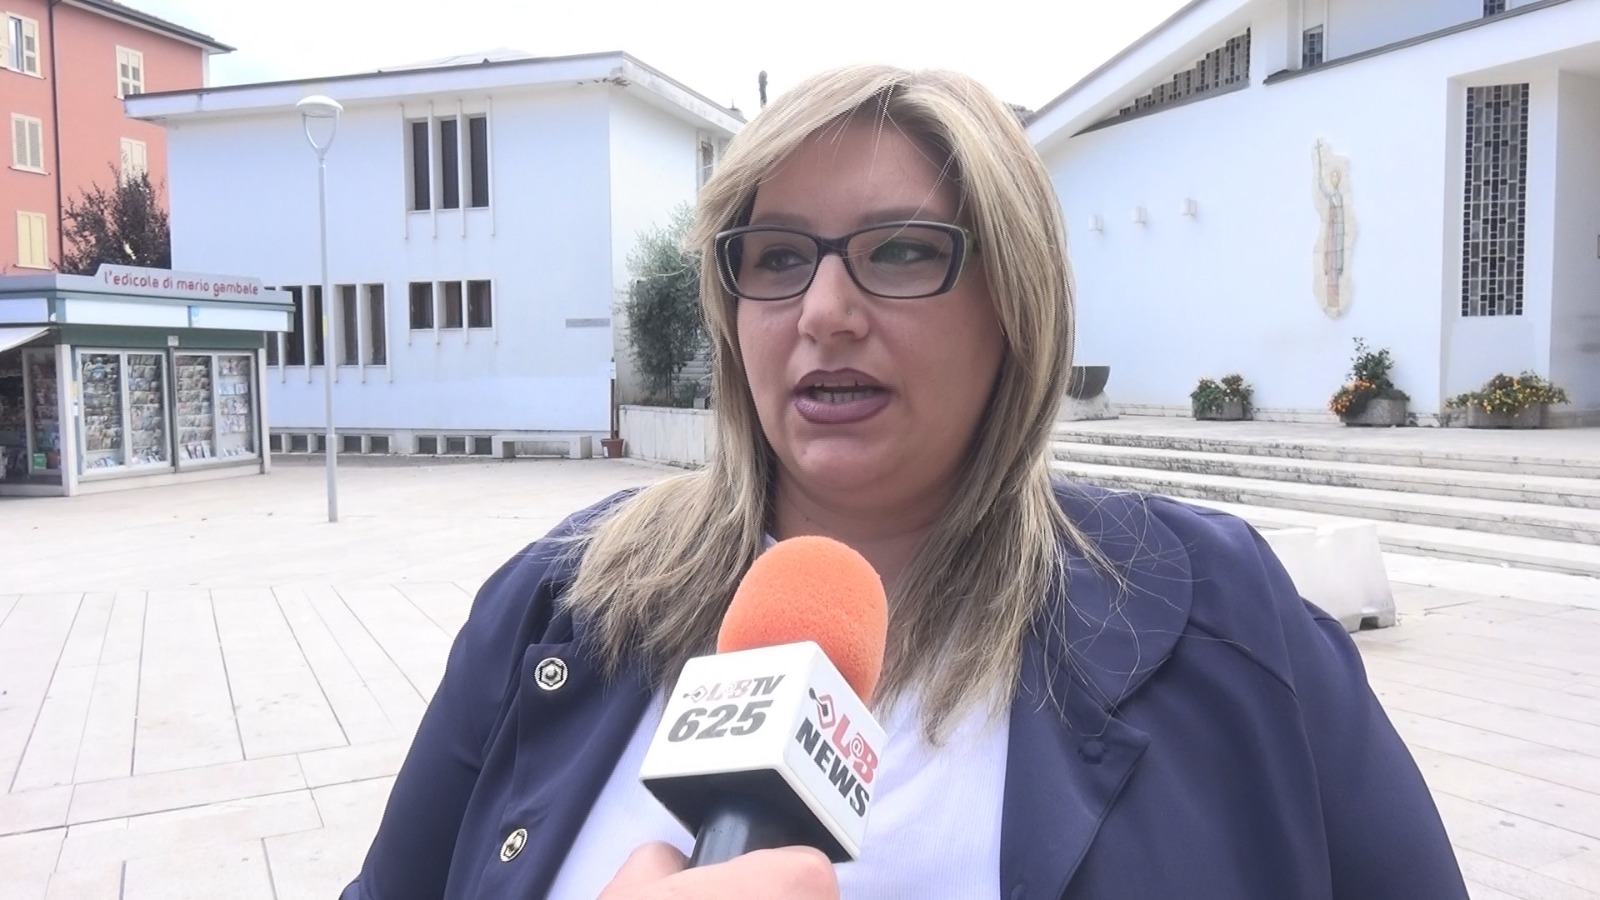 Avellino| Consiglio comunale, è Spiezia la vice presidente. Ignorata l’indicazione dell’opposizione su Preziosi